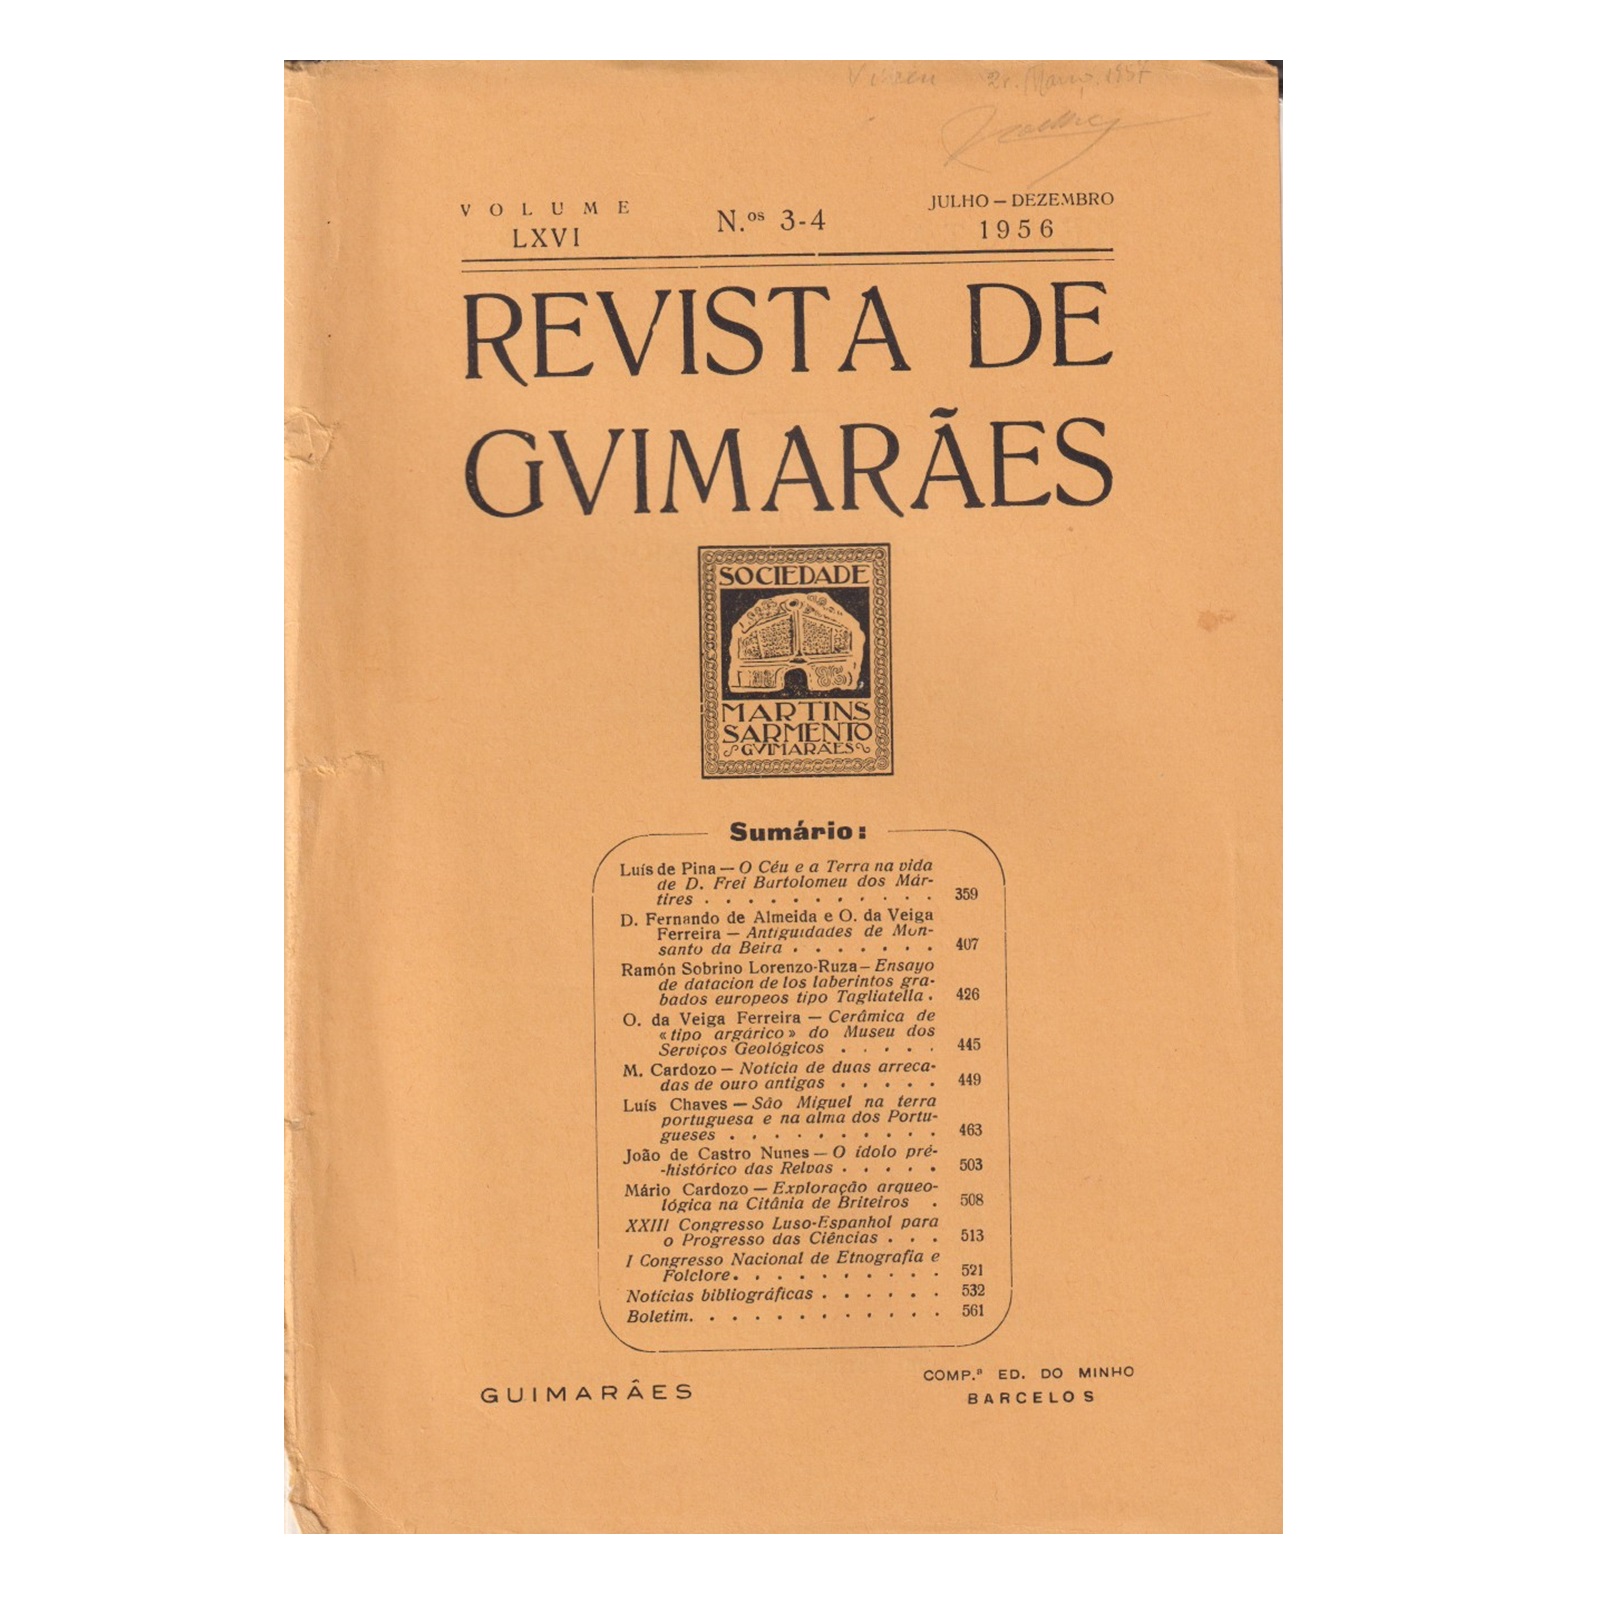 REVISTA DE GUIMARÃES. VOL. LXVI. N.º 3-4, 1956